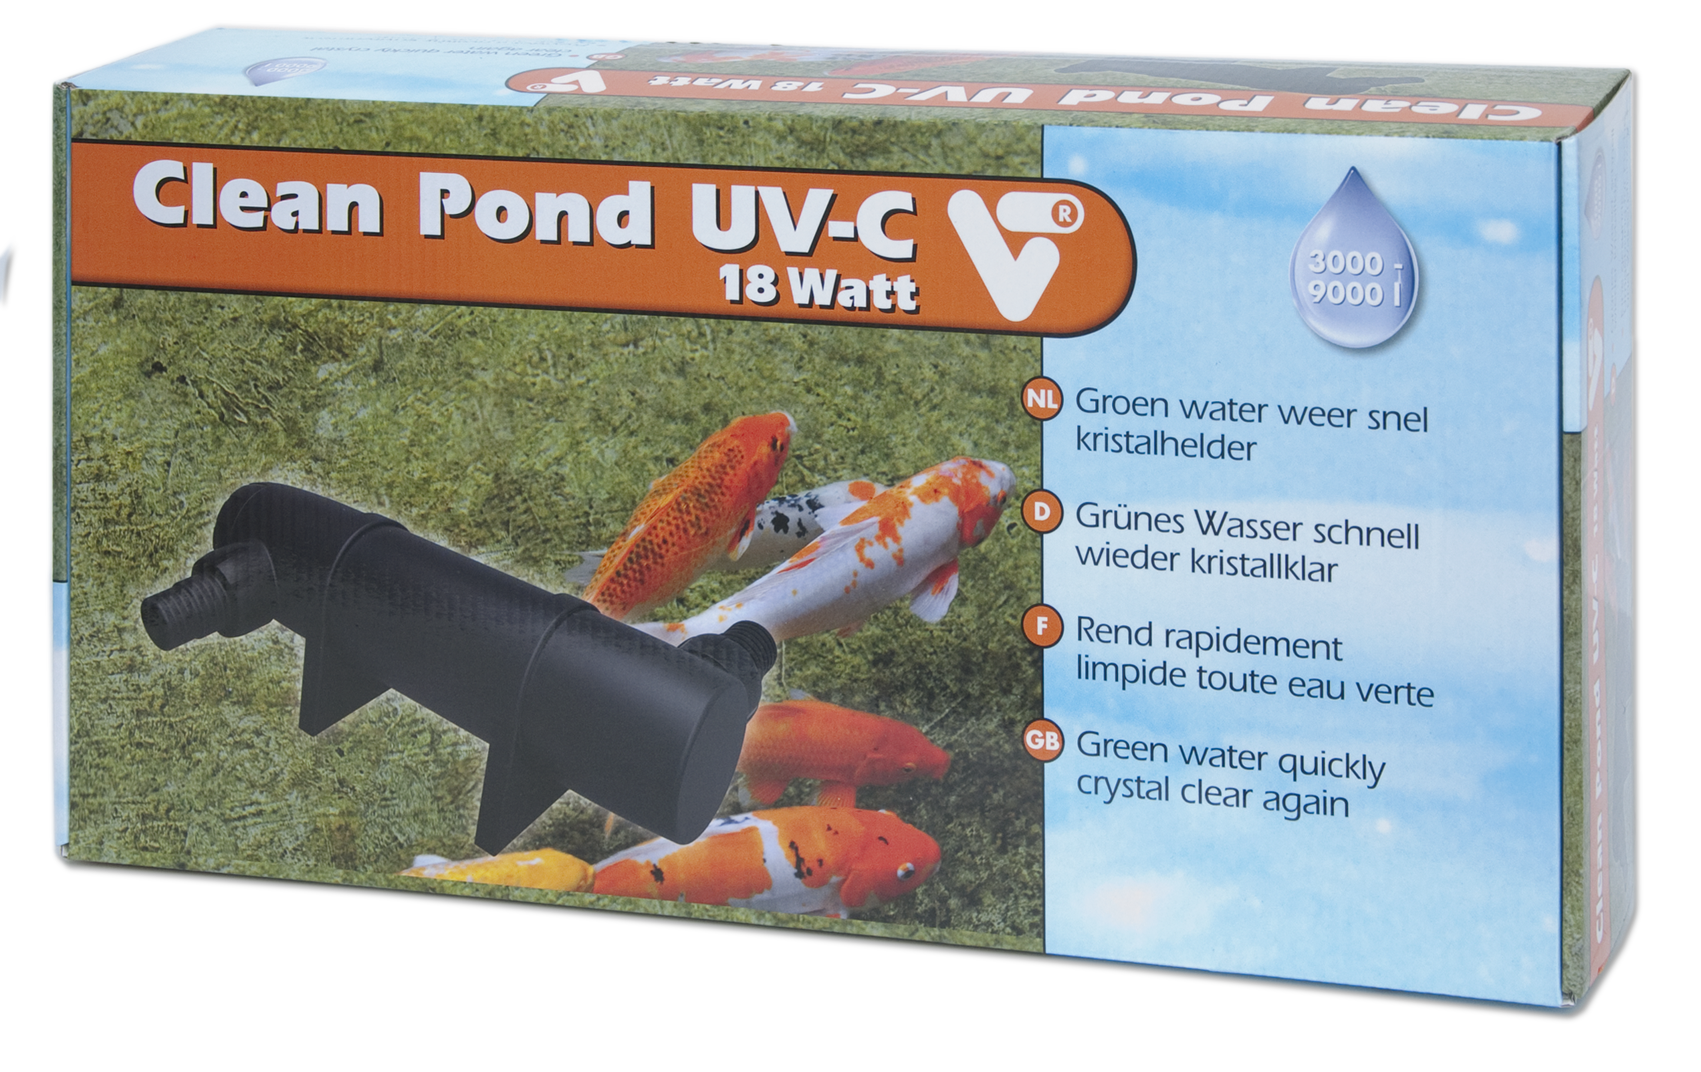 Clean Pond UV-C 18 Watt Velda